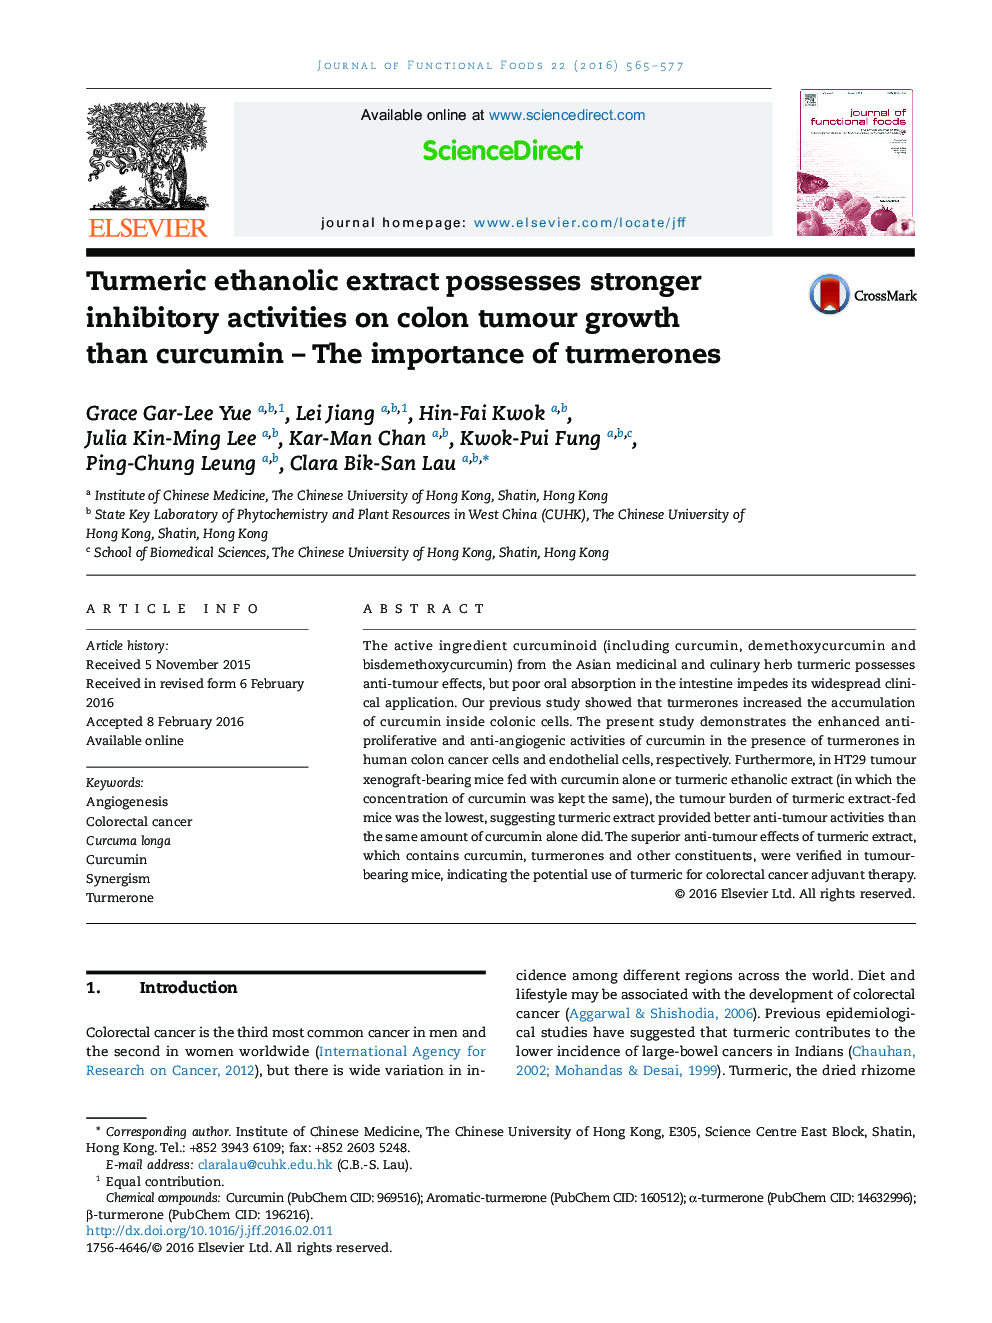 عصاره اتانولی زردچوبه دارای فعالیت های مهار کننده قوی تر در رشد تومور کولون نسبت به کورکومین است - اهمیت لکه های قرمز 